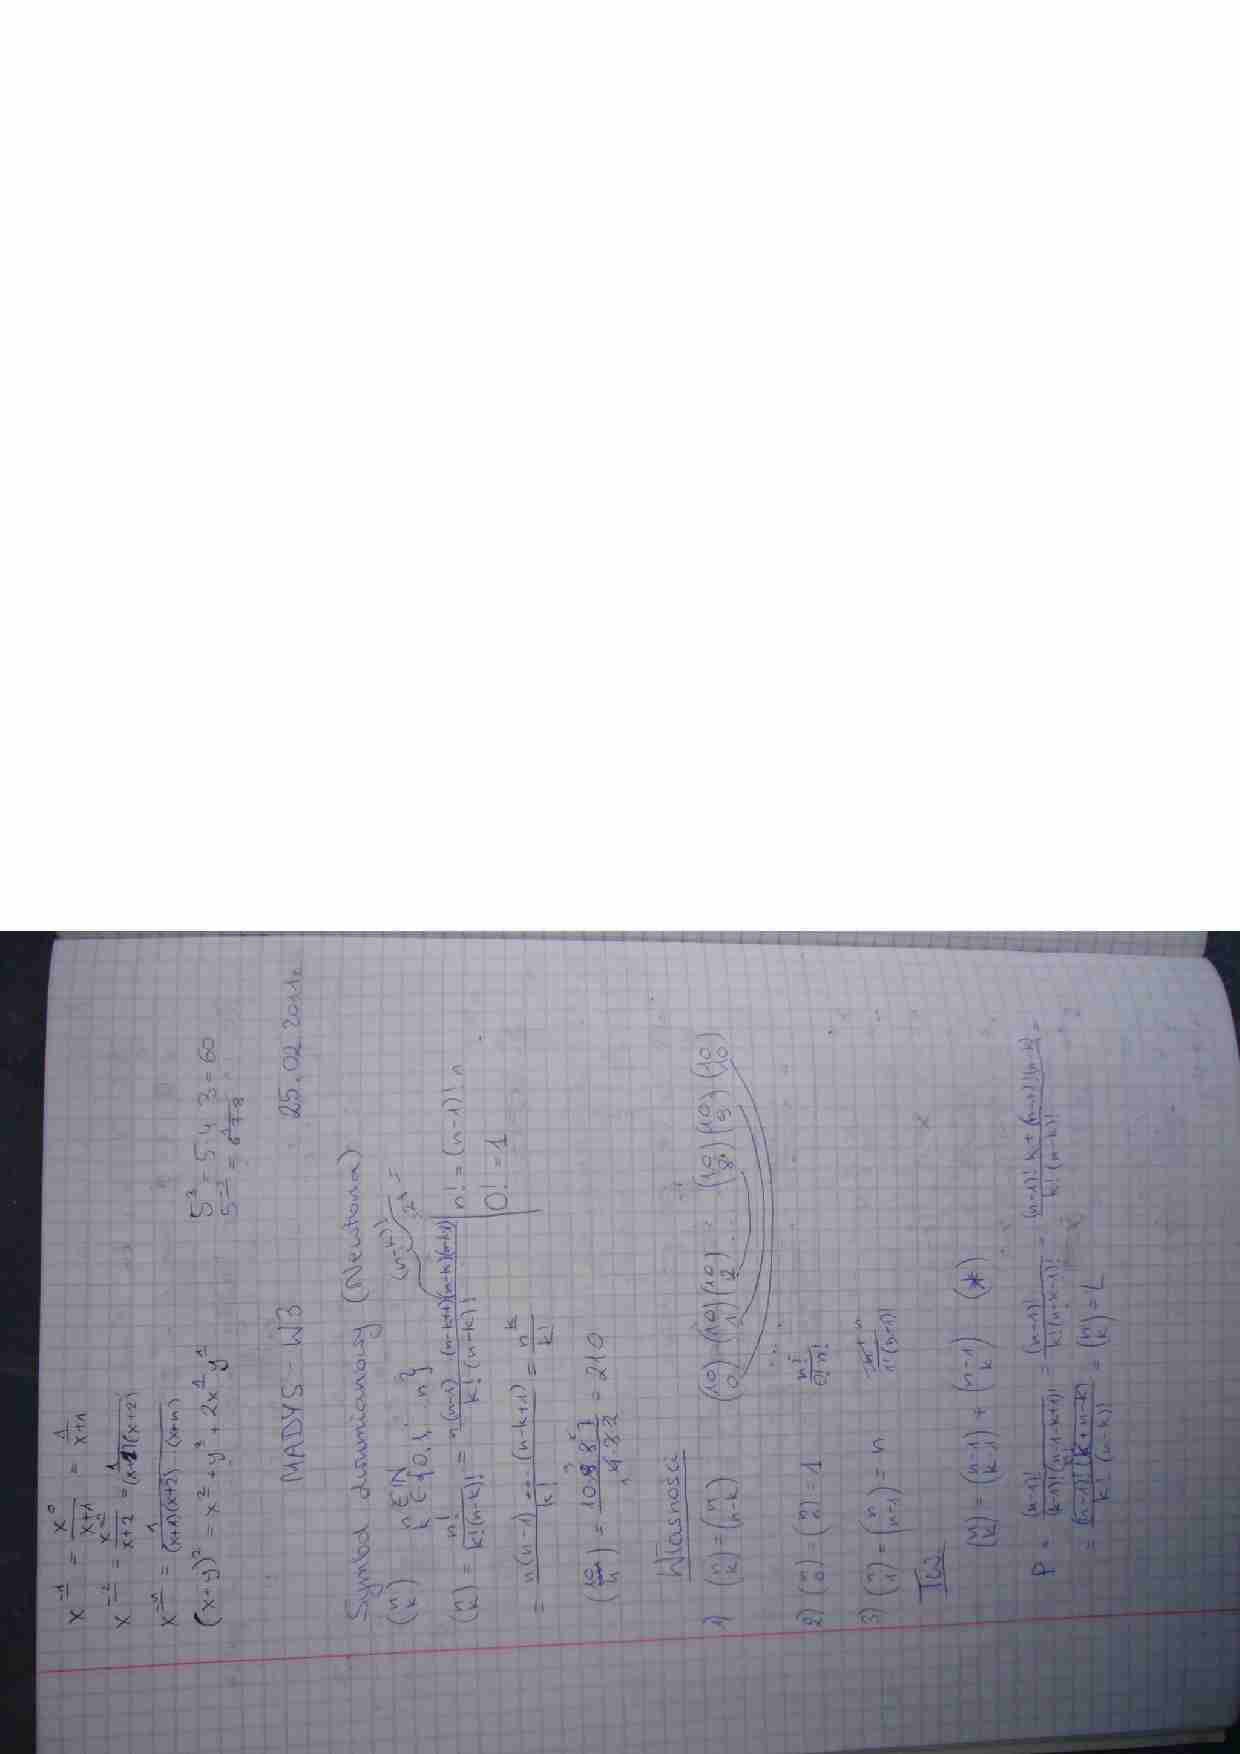 Matematyka dyskretna - wykłady - strona 1